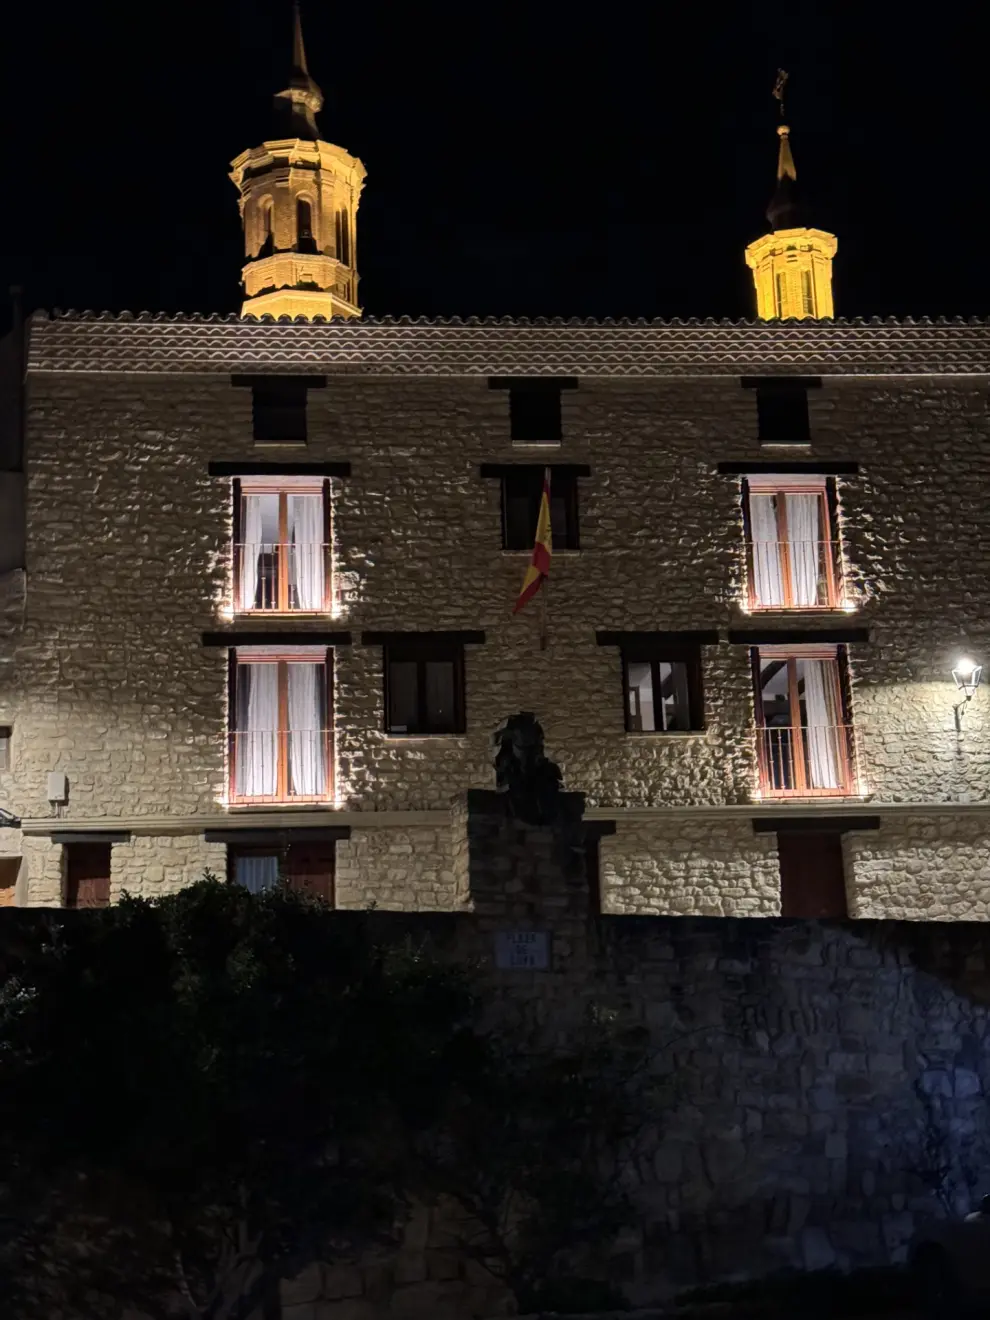 El edificio del hotel Villa de Goya está situado frente a la casa natal del pintor aragonés en el centro de Fuendetodos.